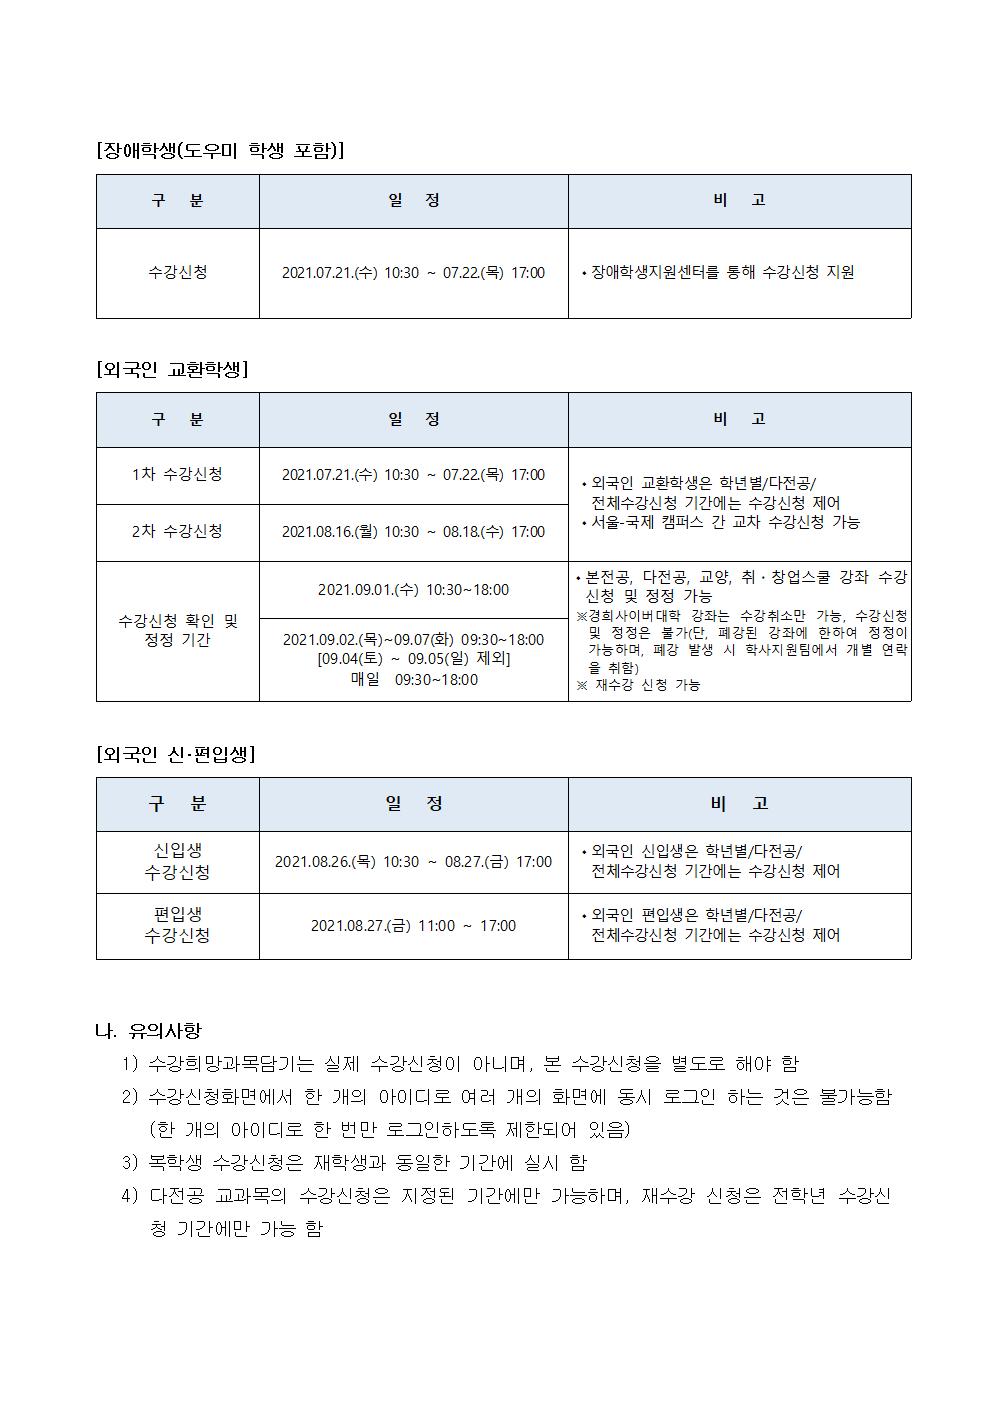 [붙임] 2021-2학기 수강신청일정(안)_공지문002.jpg